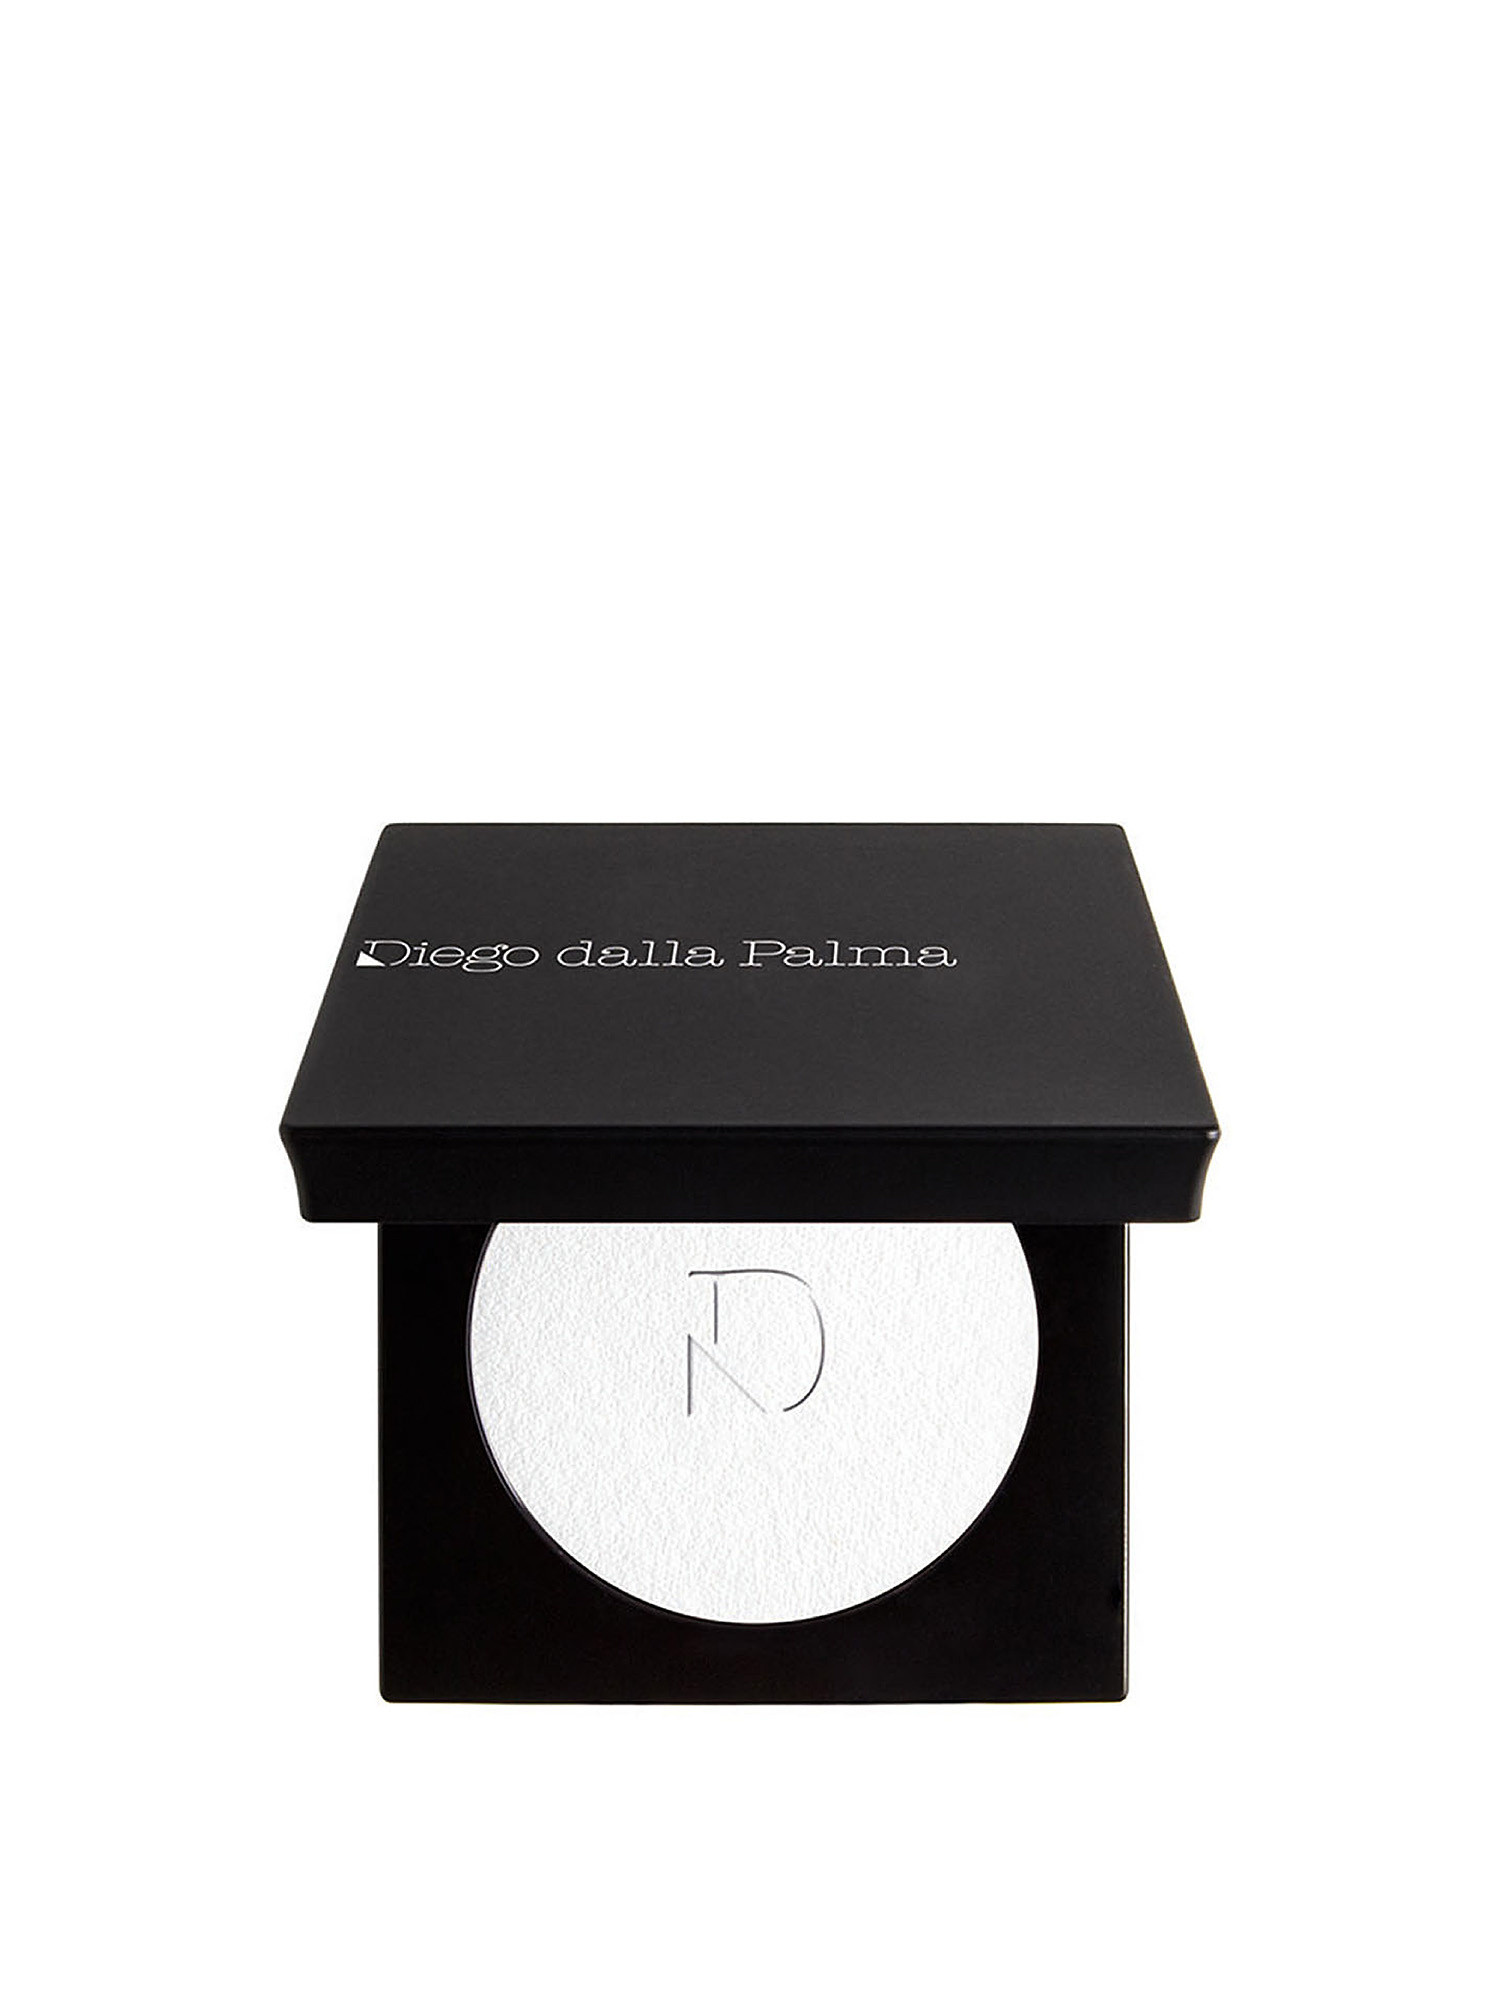 Makeupstudio Compact Matte Eye Powder - 151 optical white, White, large image number 0